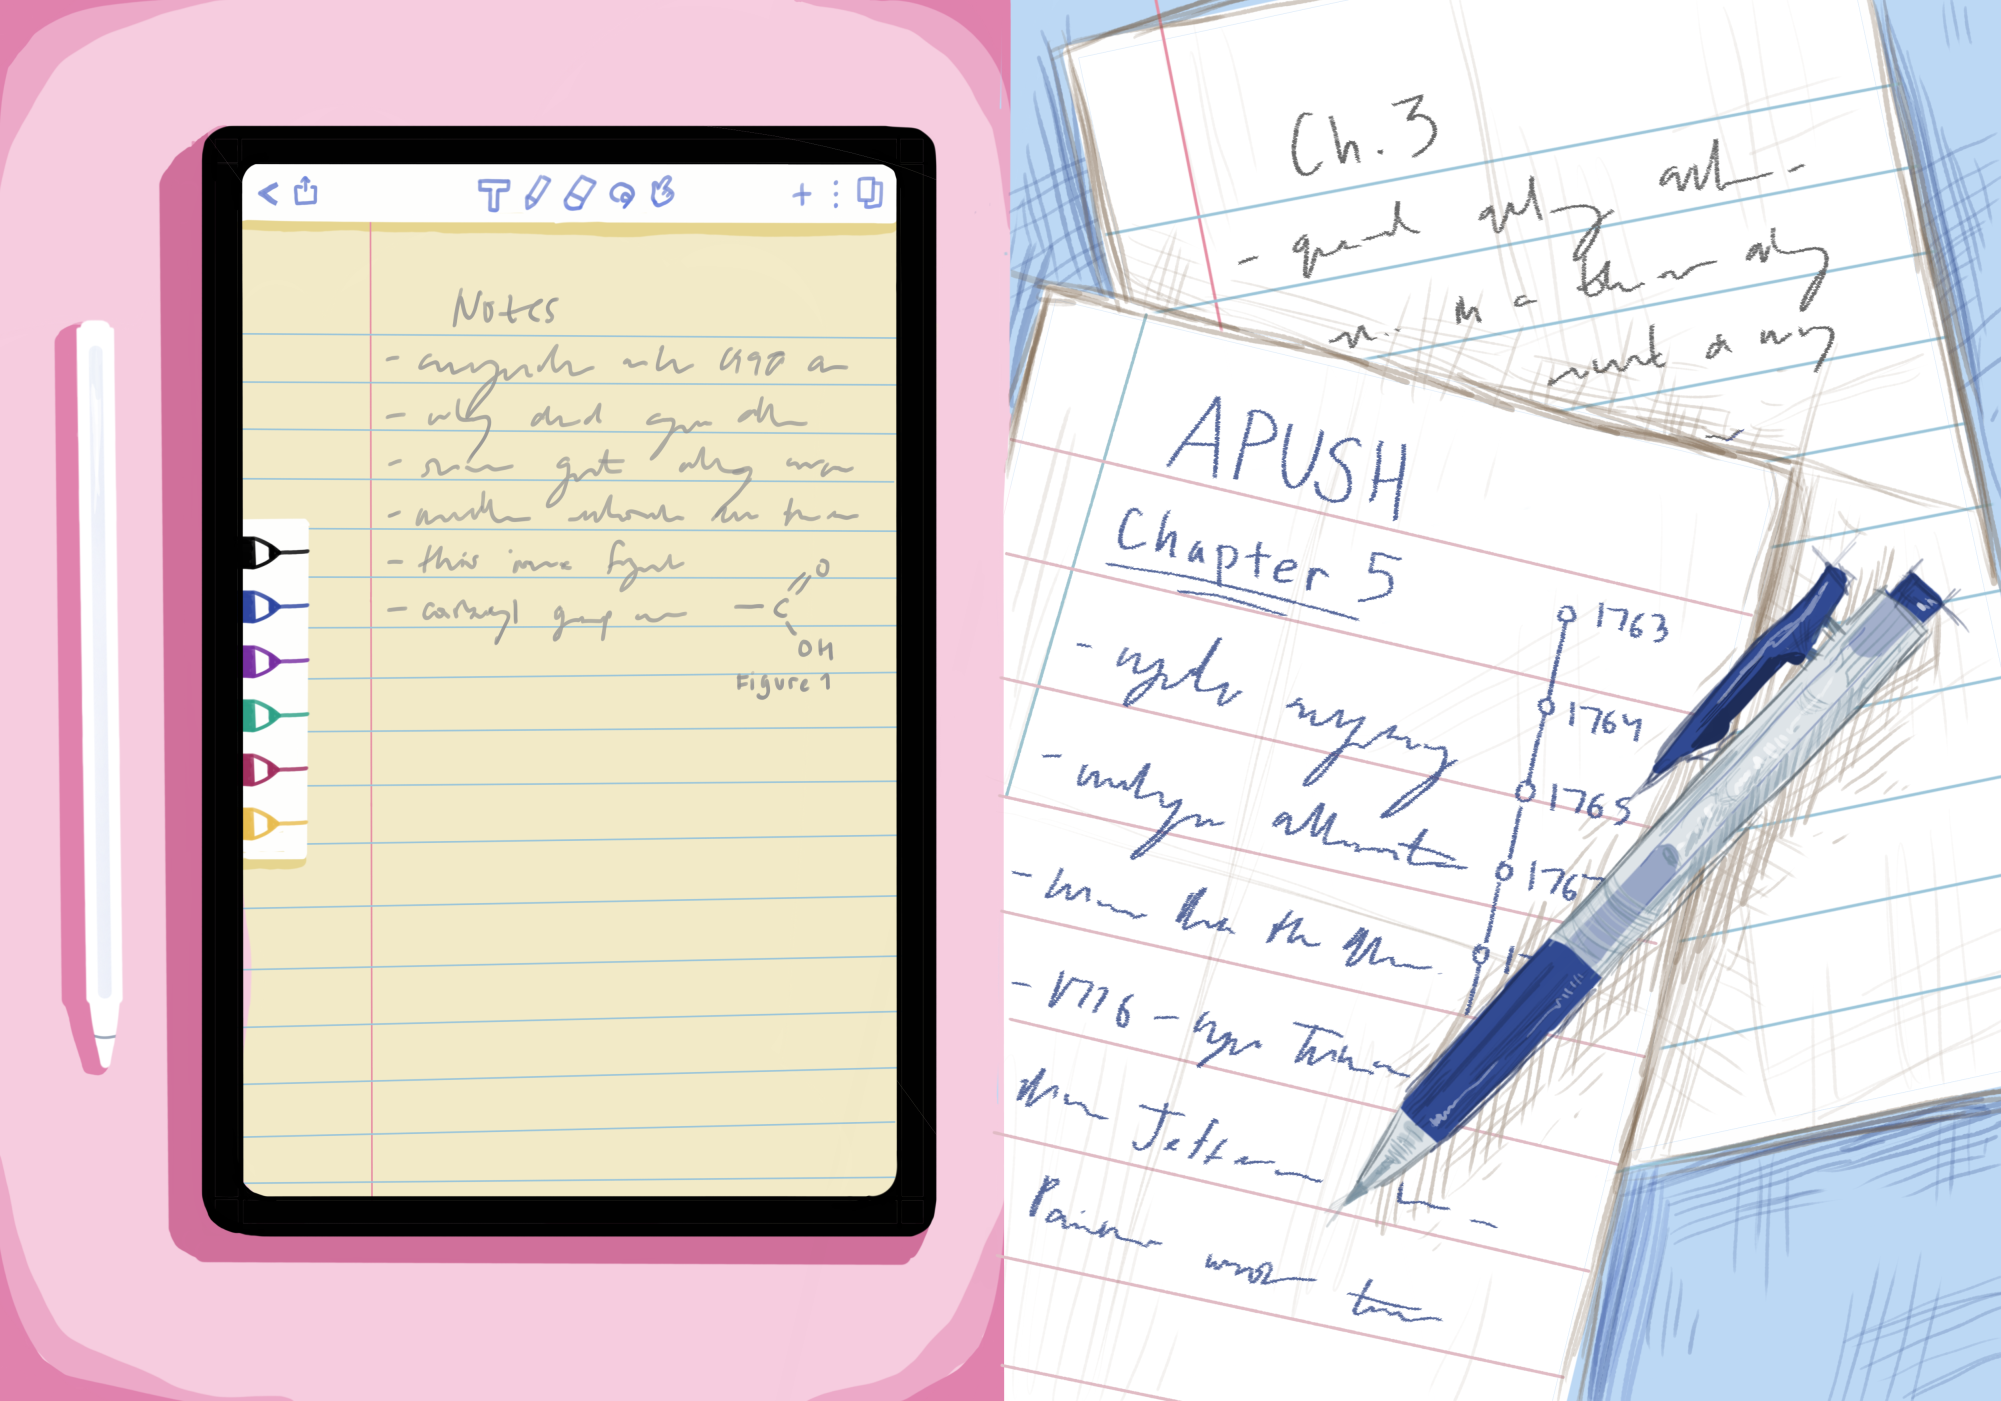 Perspectives: iPad vs. paper notes - Harker Aquila